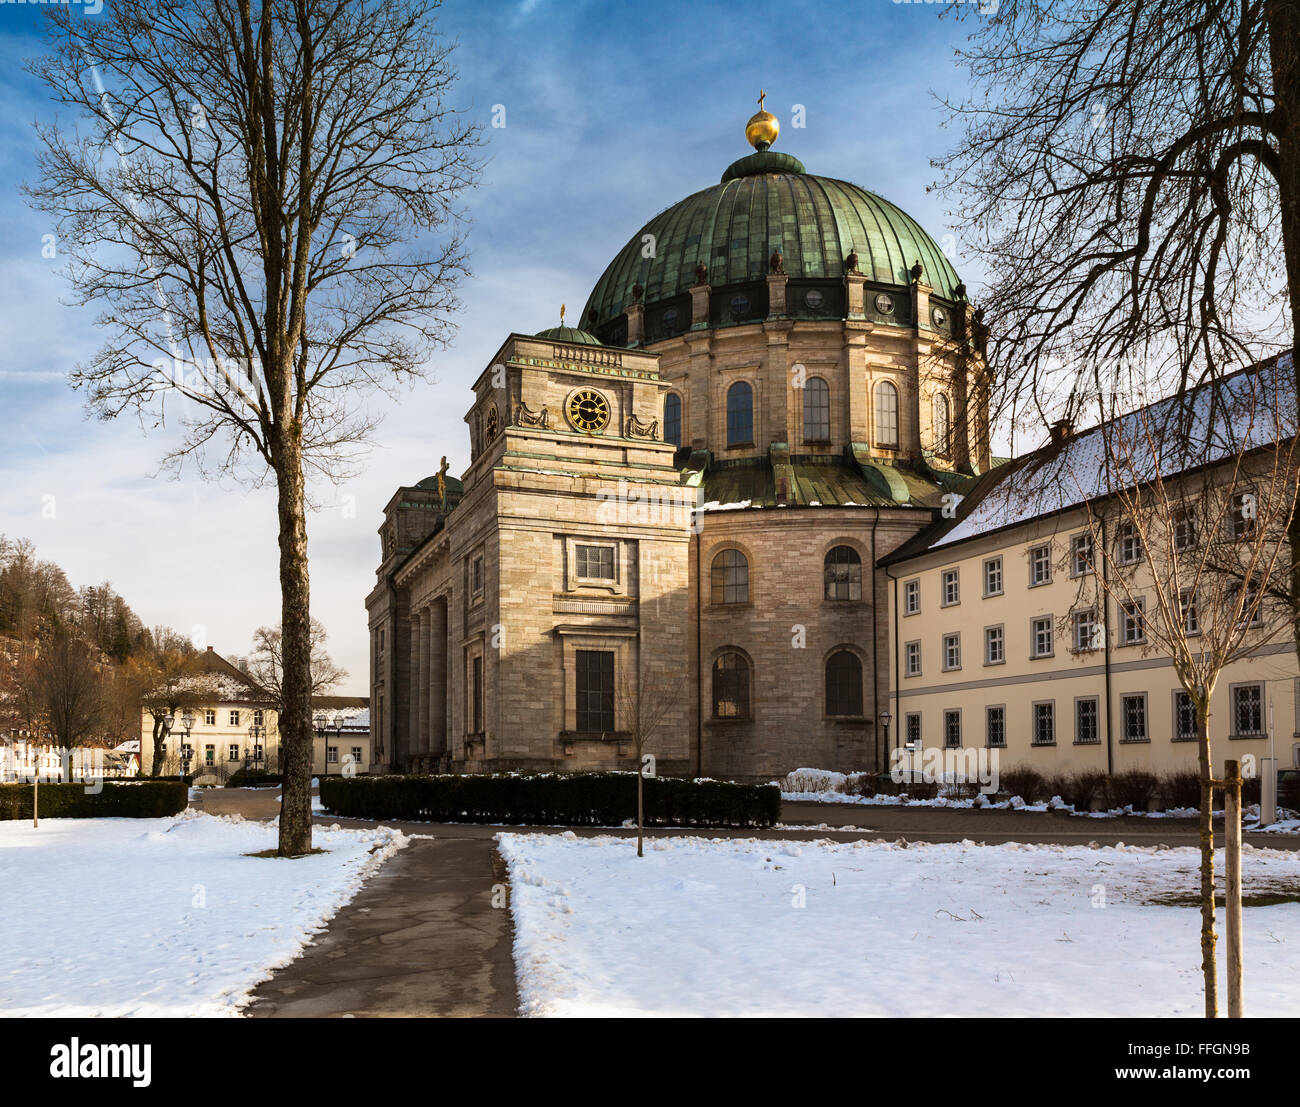 St. Blaise Abtei (Kloster St. Blasien), Schwarzwald, Deutschland Stockfoto